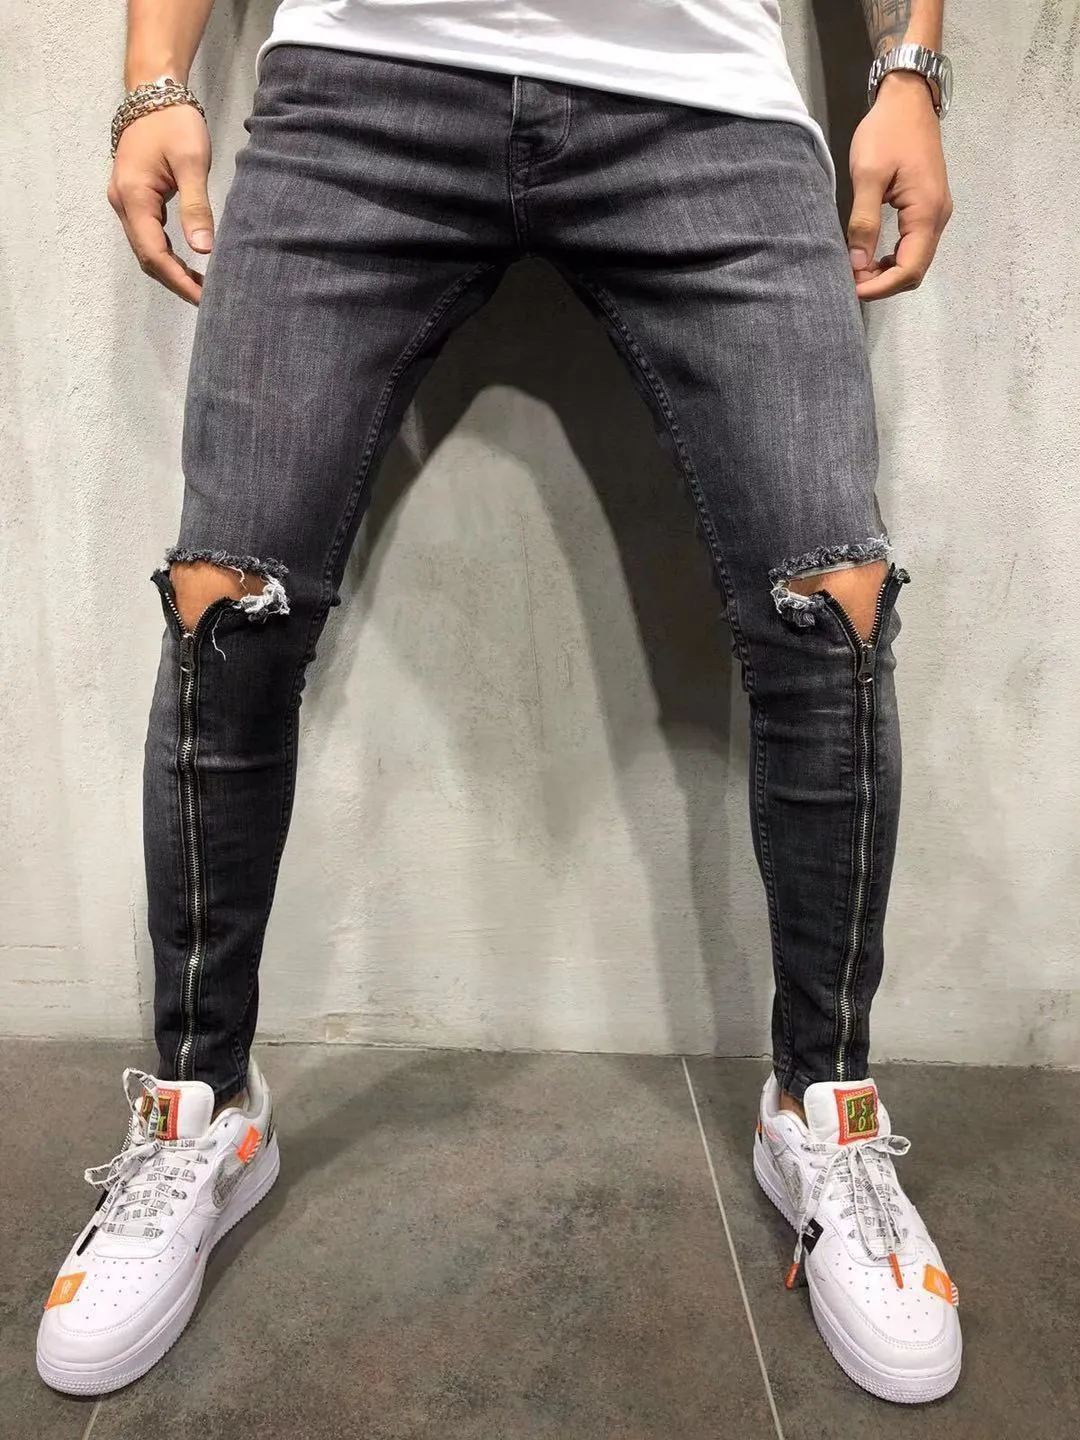 Designer Denim Pantalones For Men High Quality, Small Feet Jeans ...